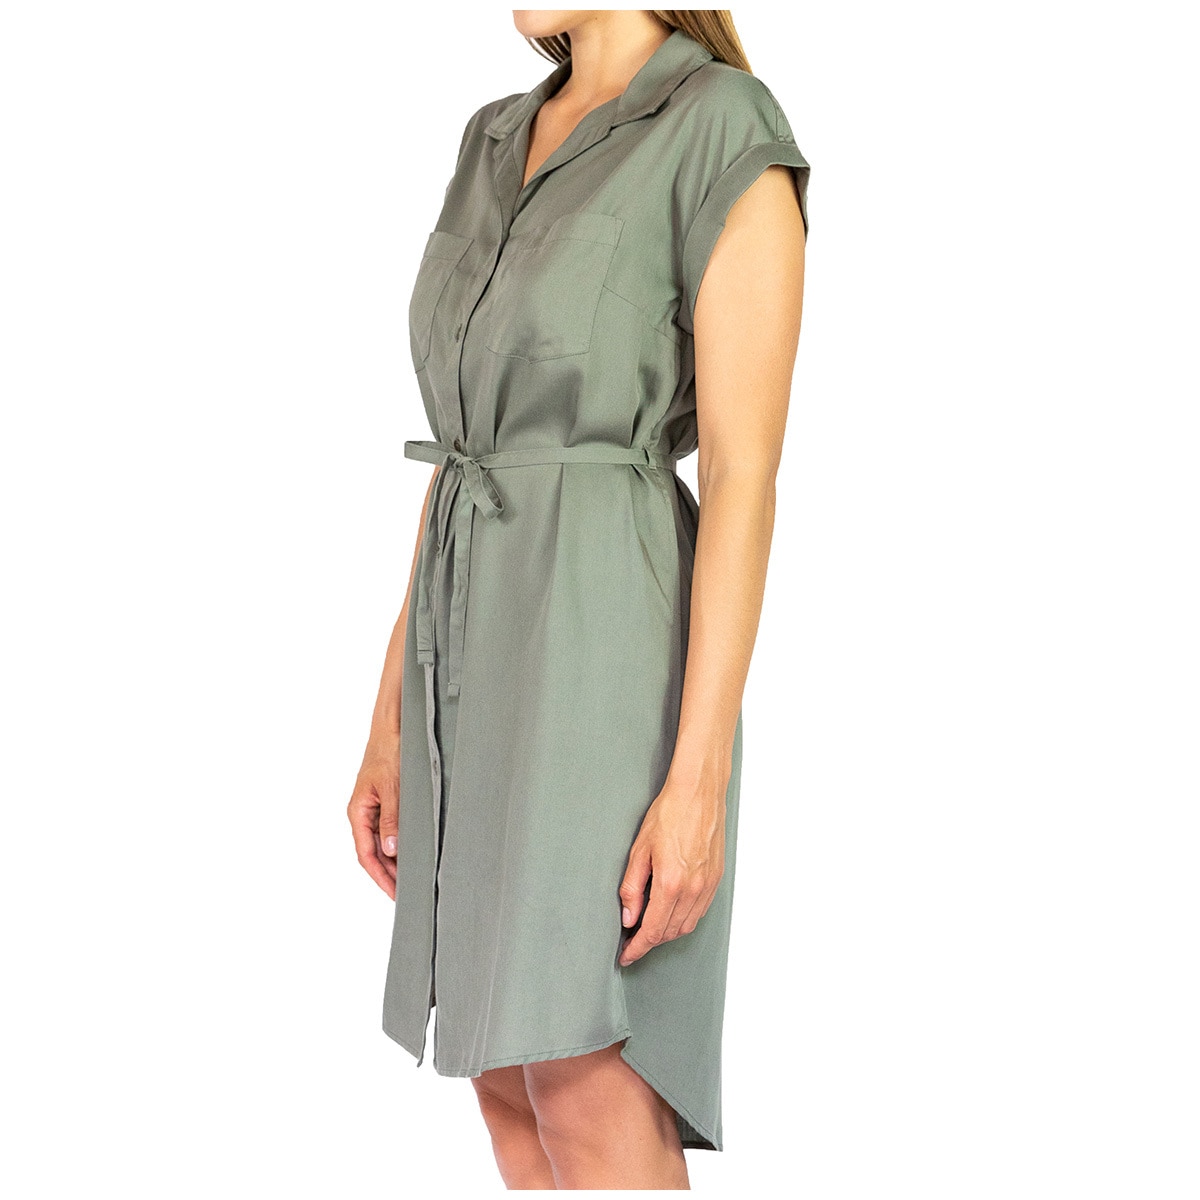 JACH's Women's Tencel Dress - Olive